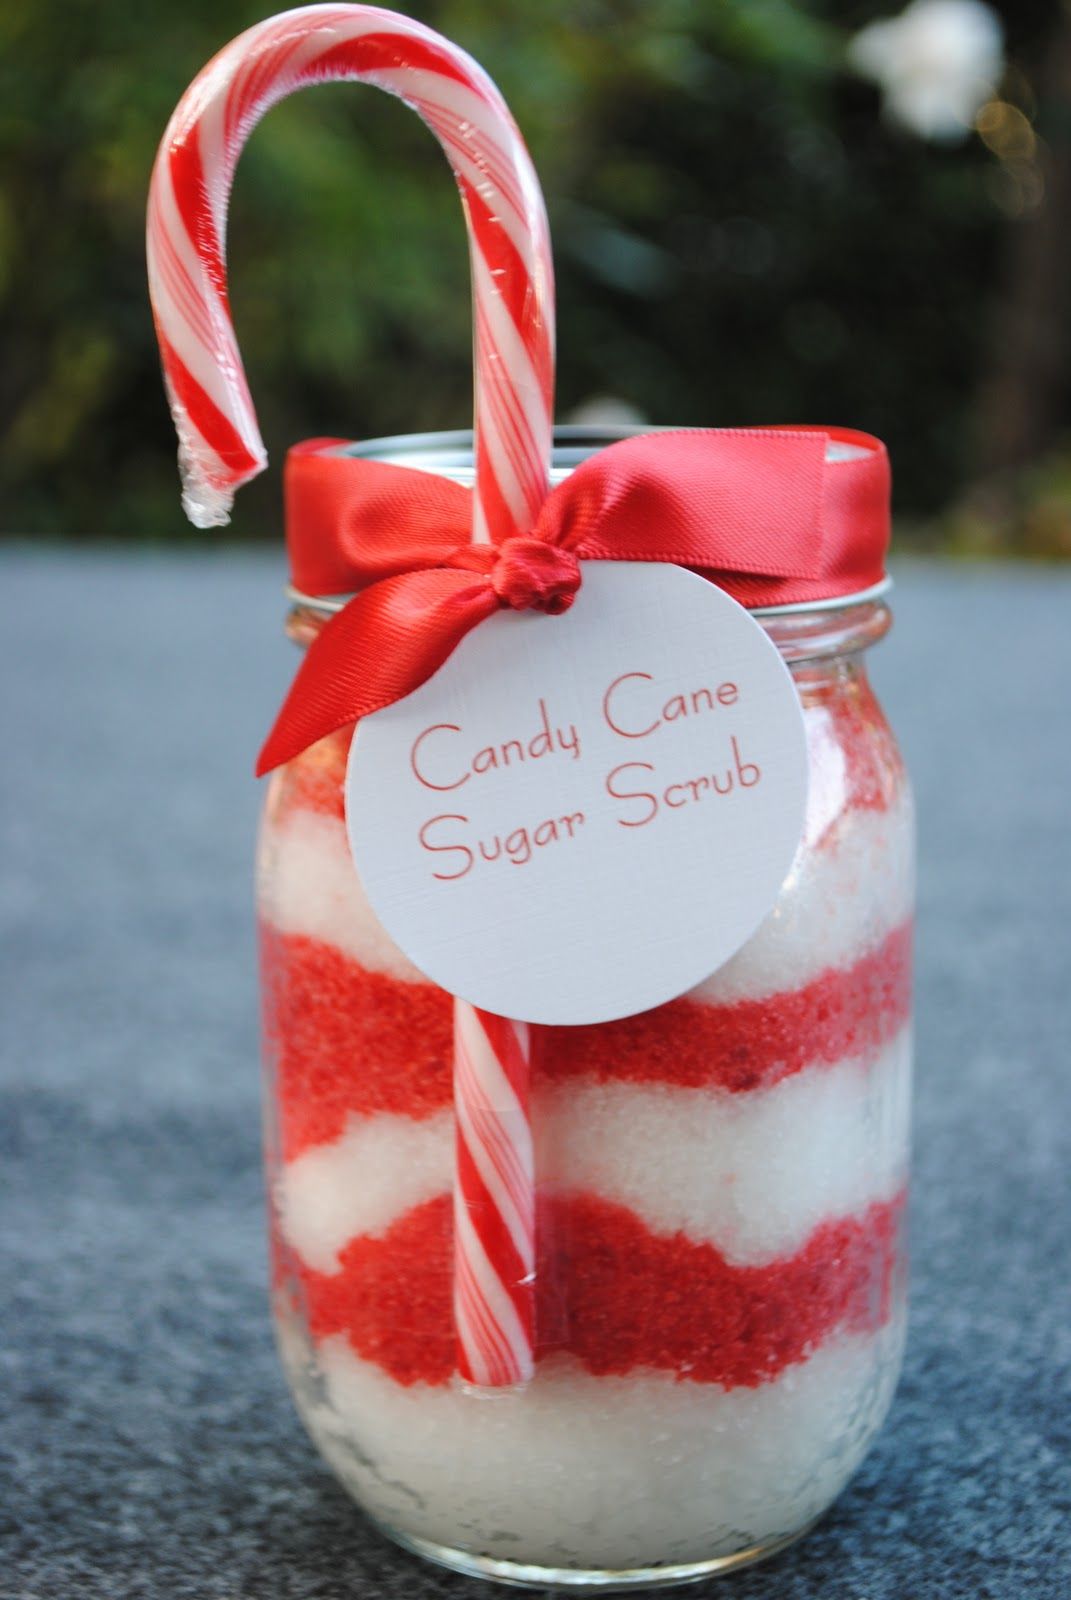 DIY candy cane sugar scrub – so cute for Christmas gifts!